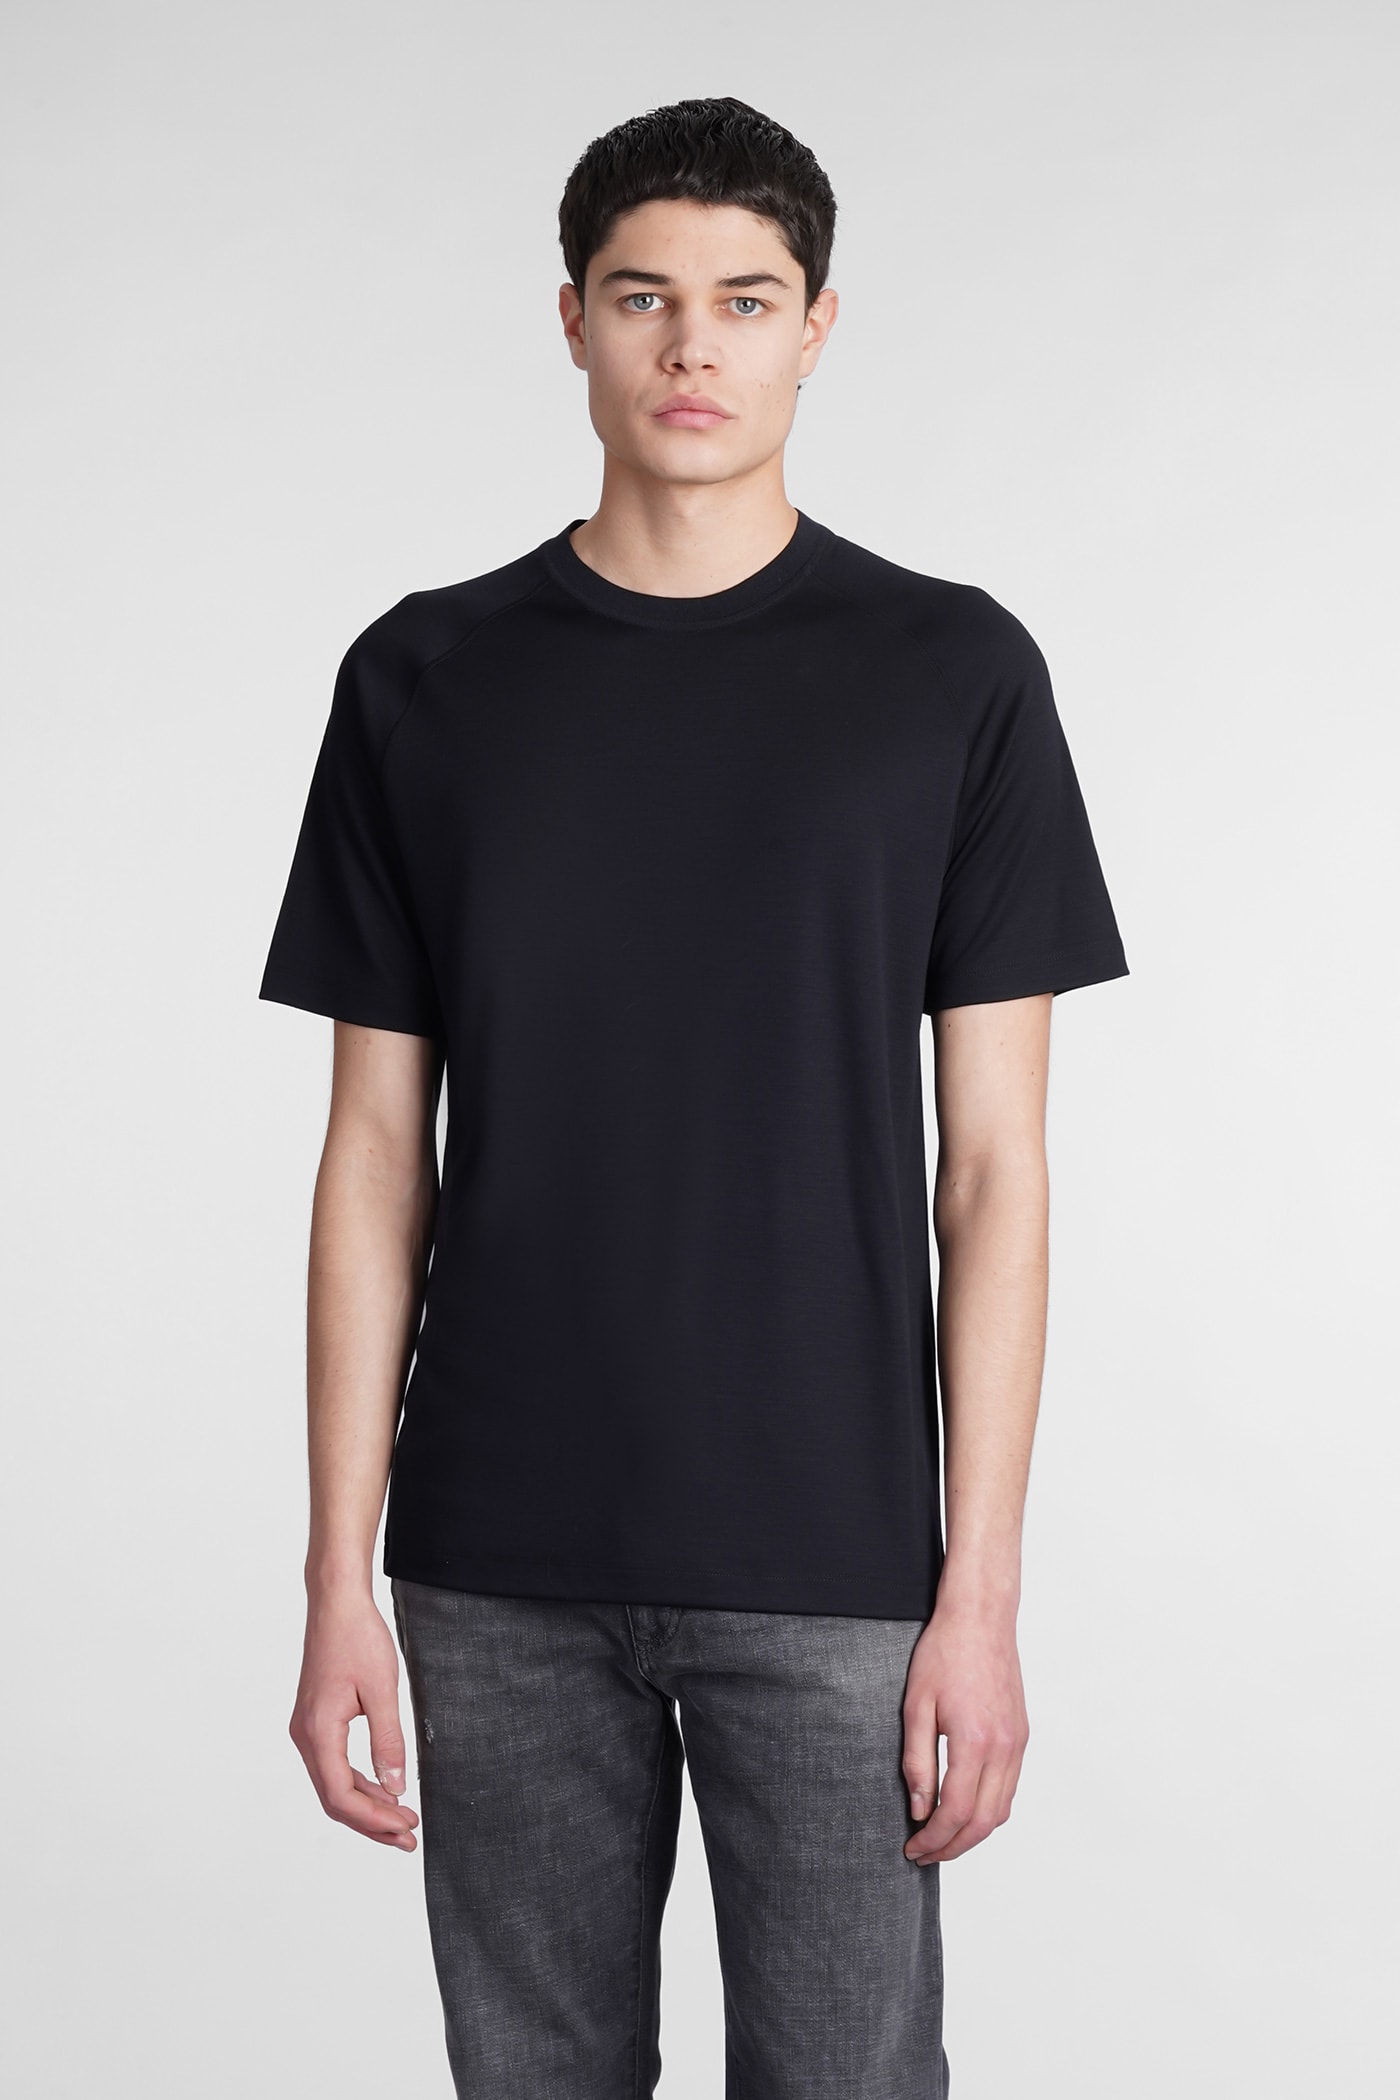 Ermenegildo Zegna T-shirt In Black Wool